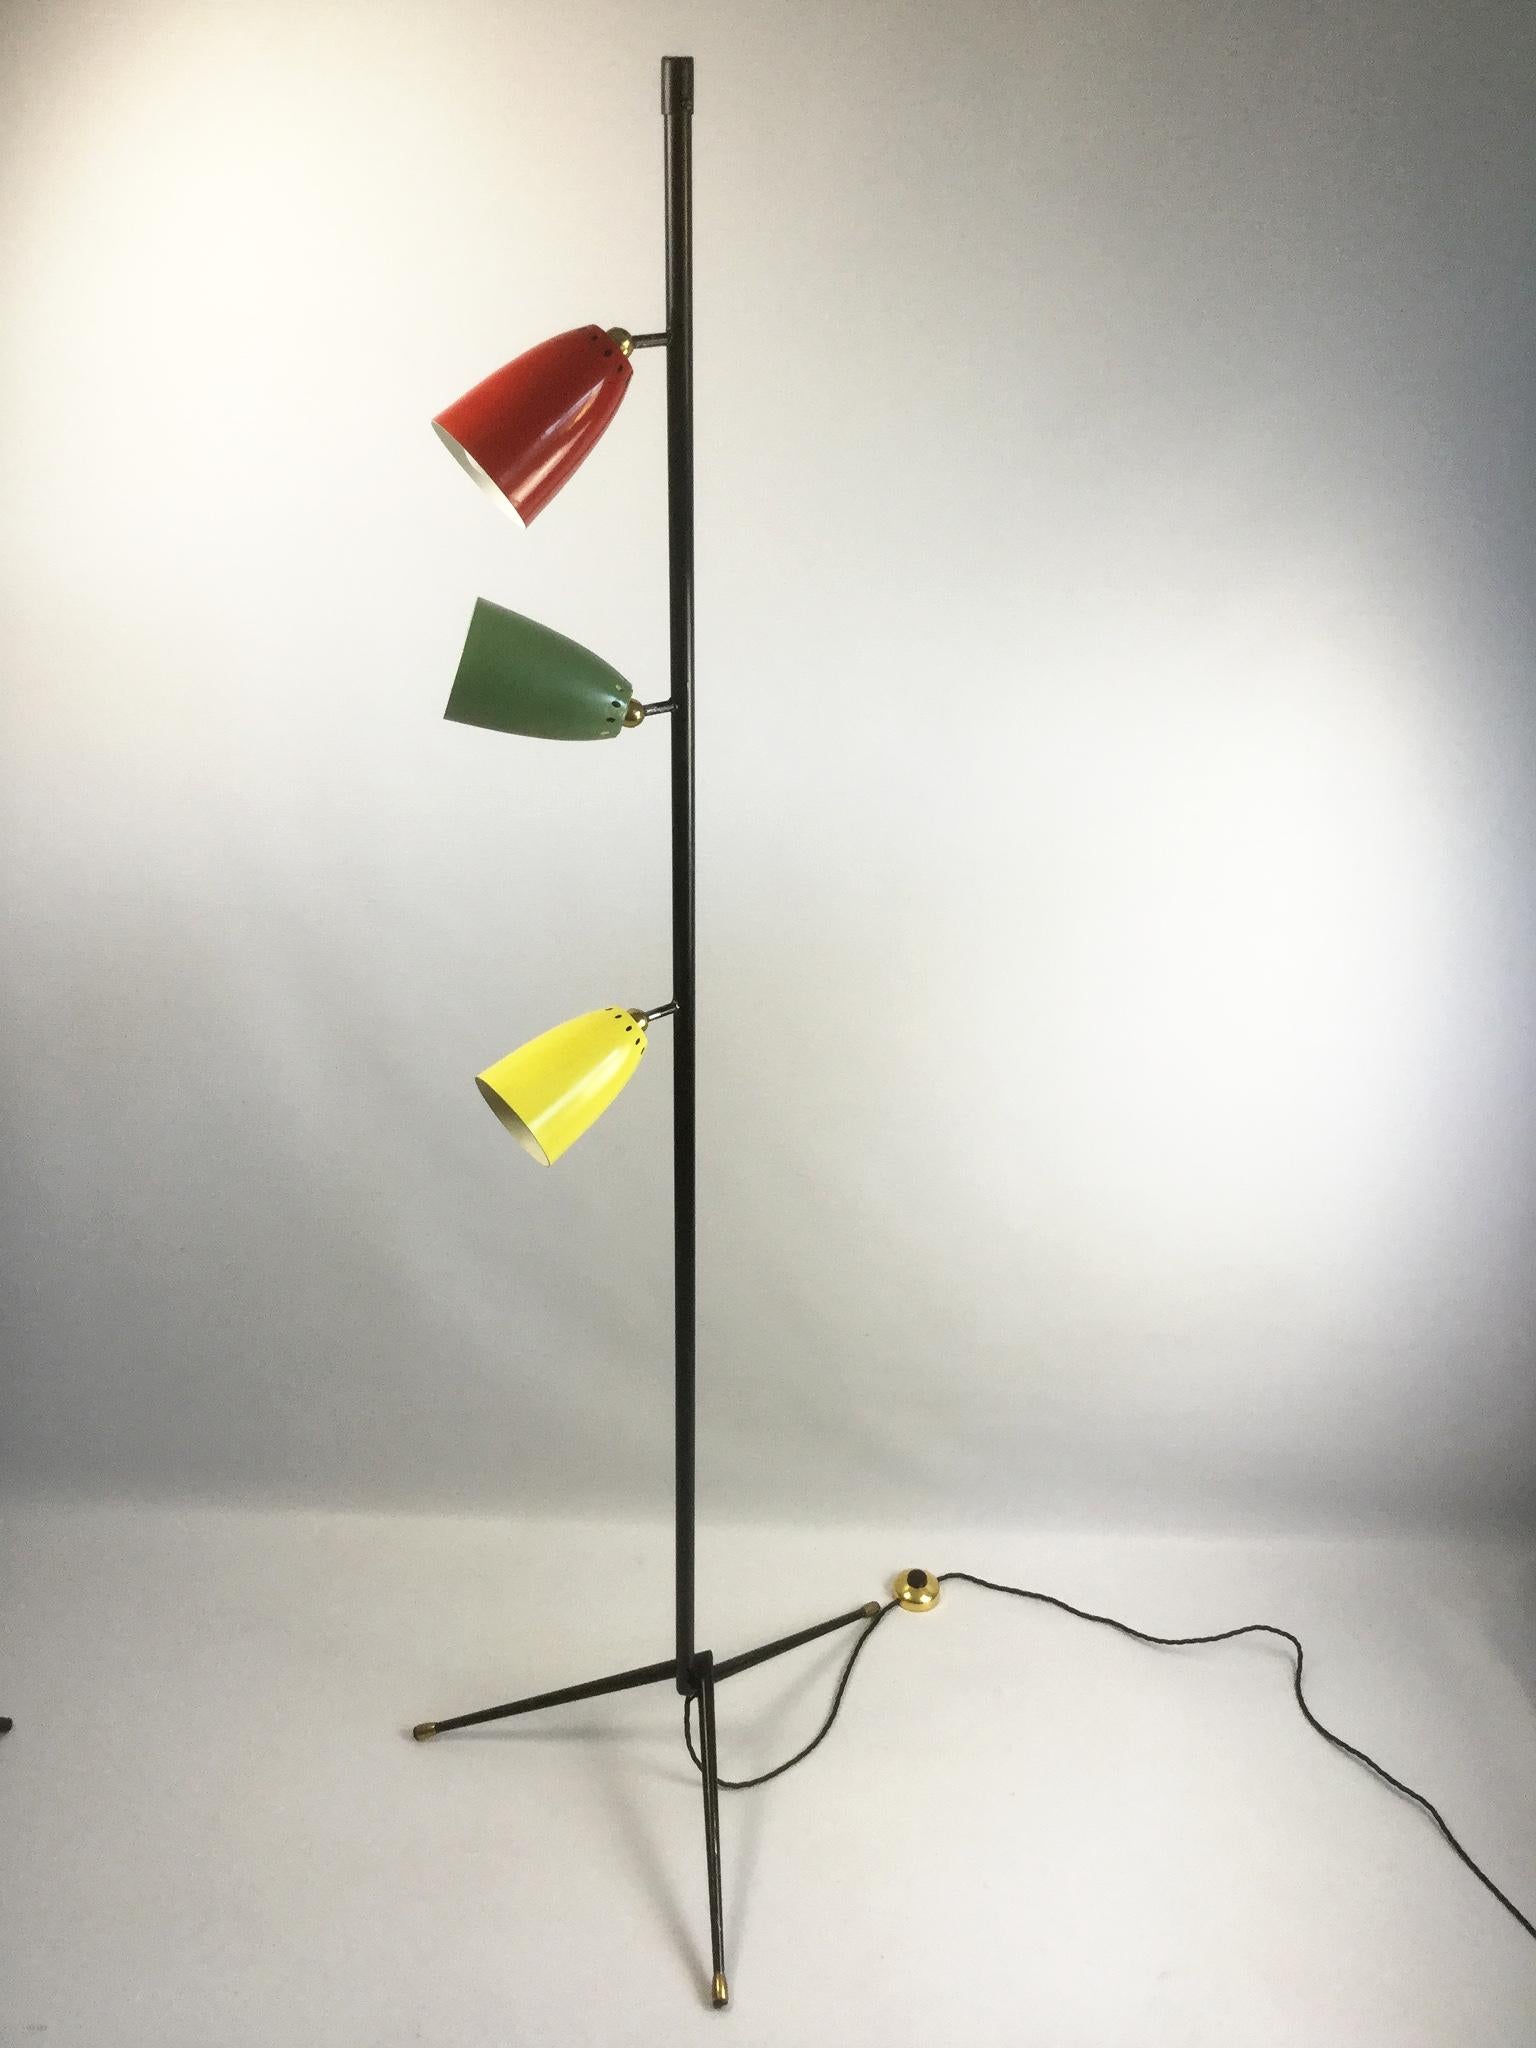 Lampadaire sur pied avec une base tripode et trois abat-jour colorés
Recâblé avec un câble isolé électriquement et une pédale de commande.